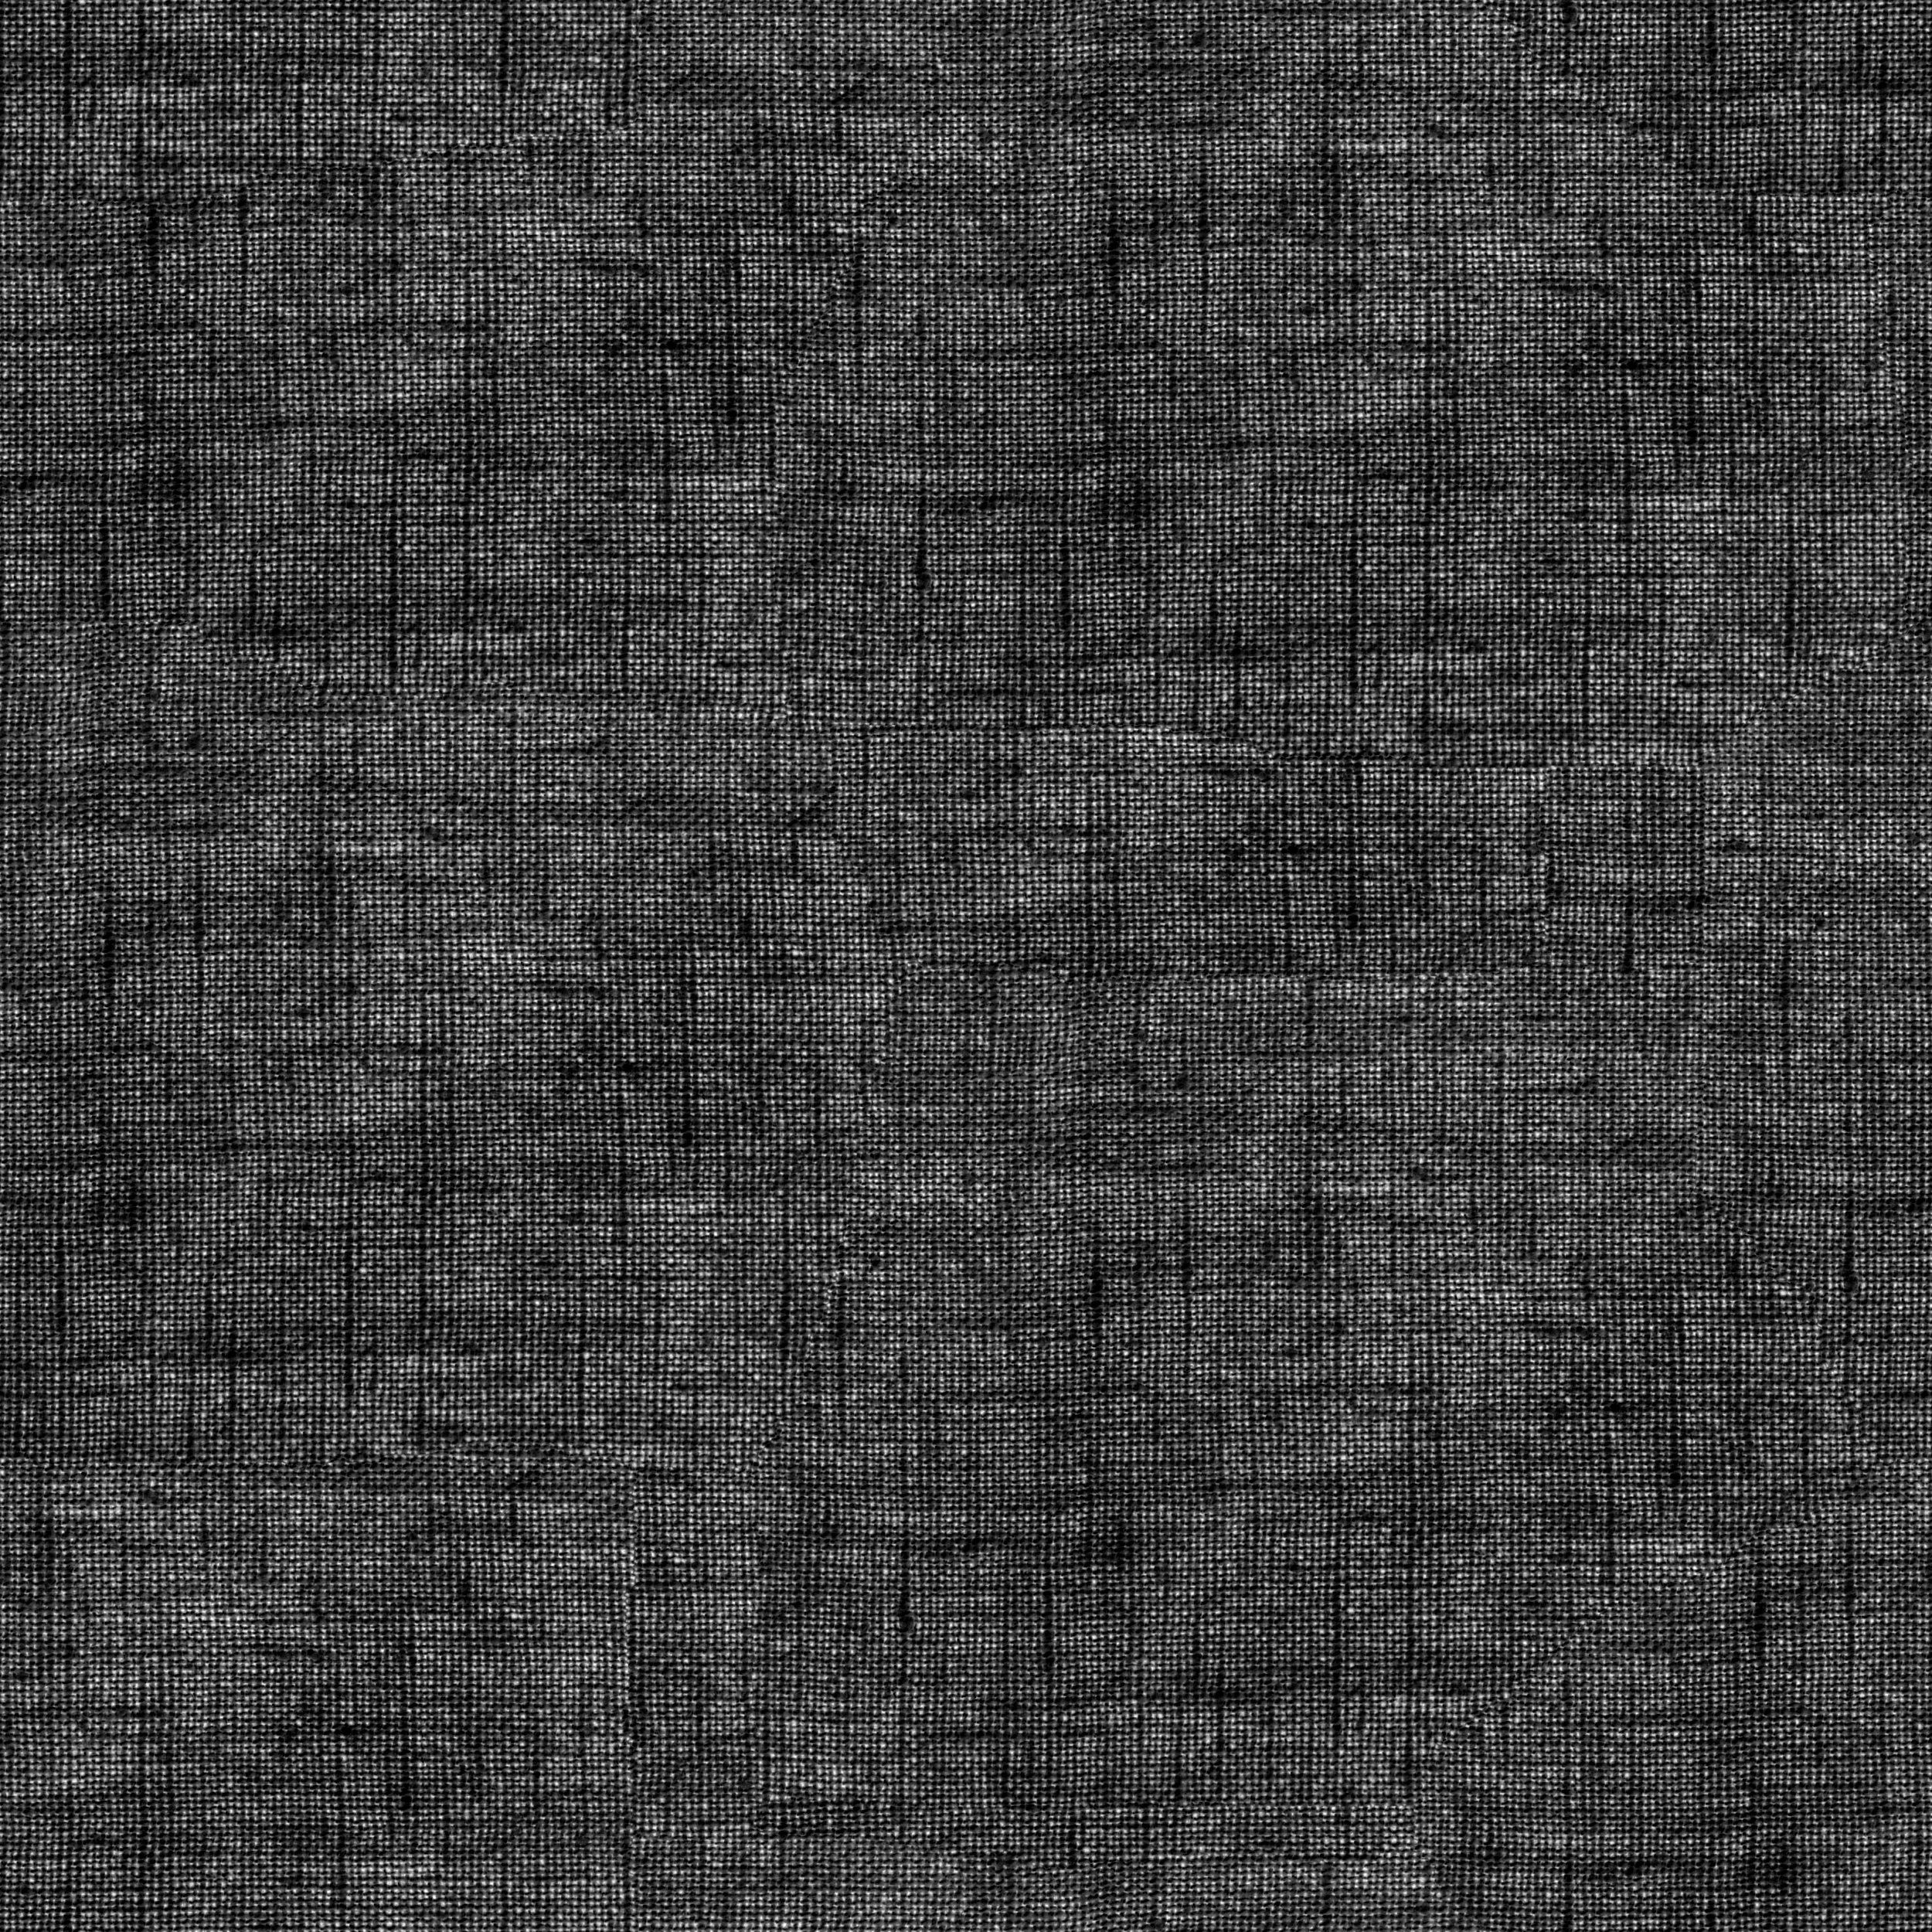 黑白地毯贴图图片